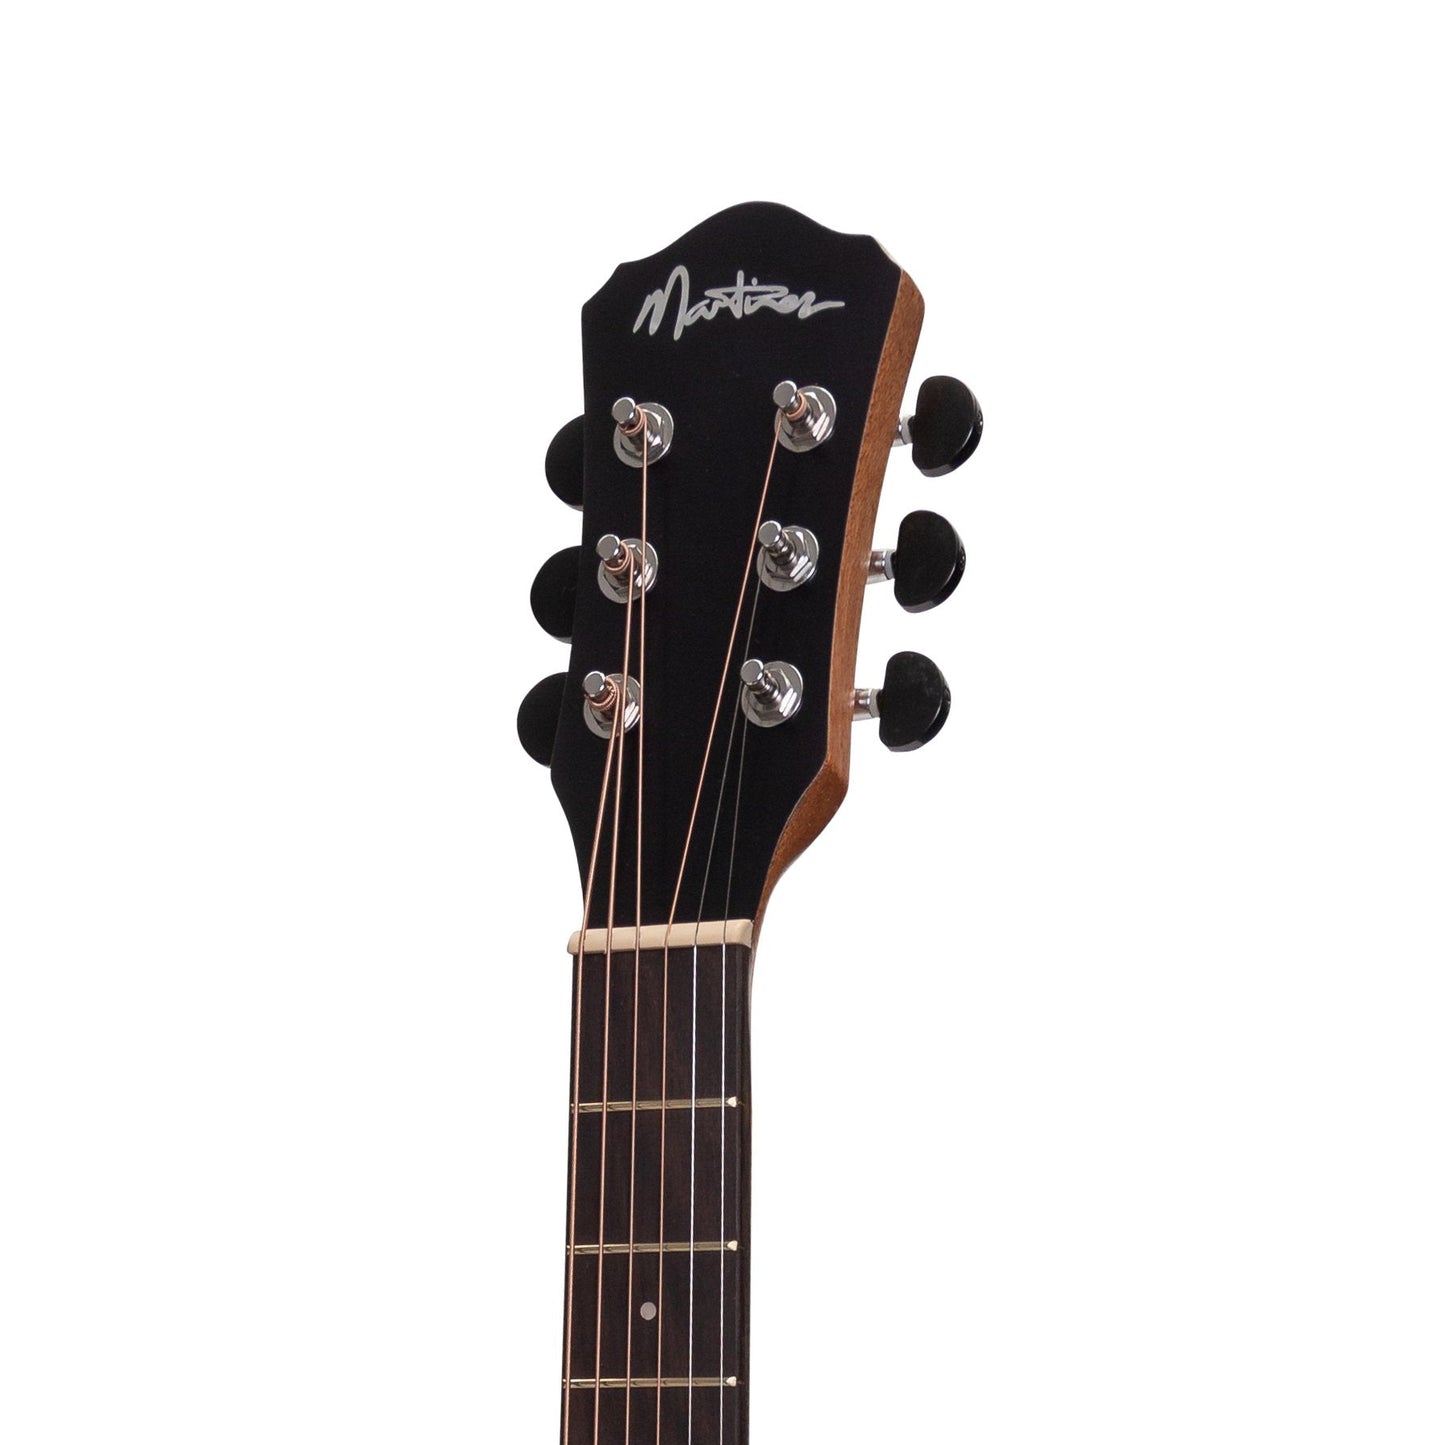 Martinez Acoustic Short Scale Guitar (Mindi-Wood)